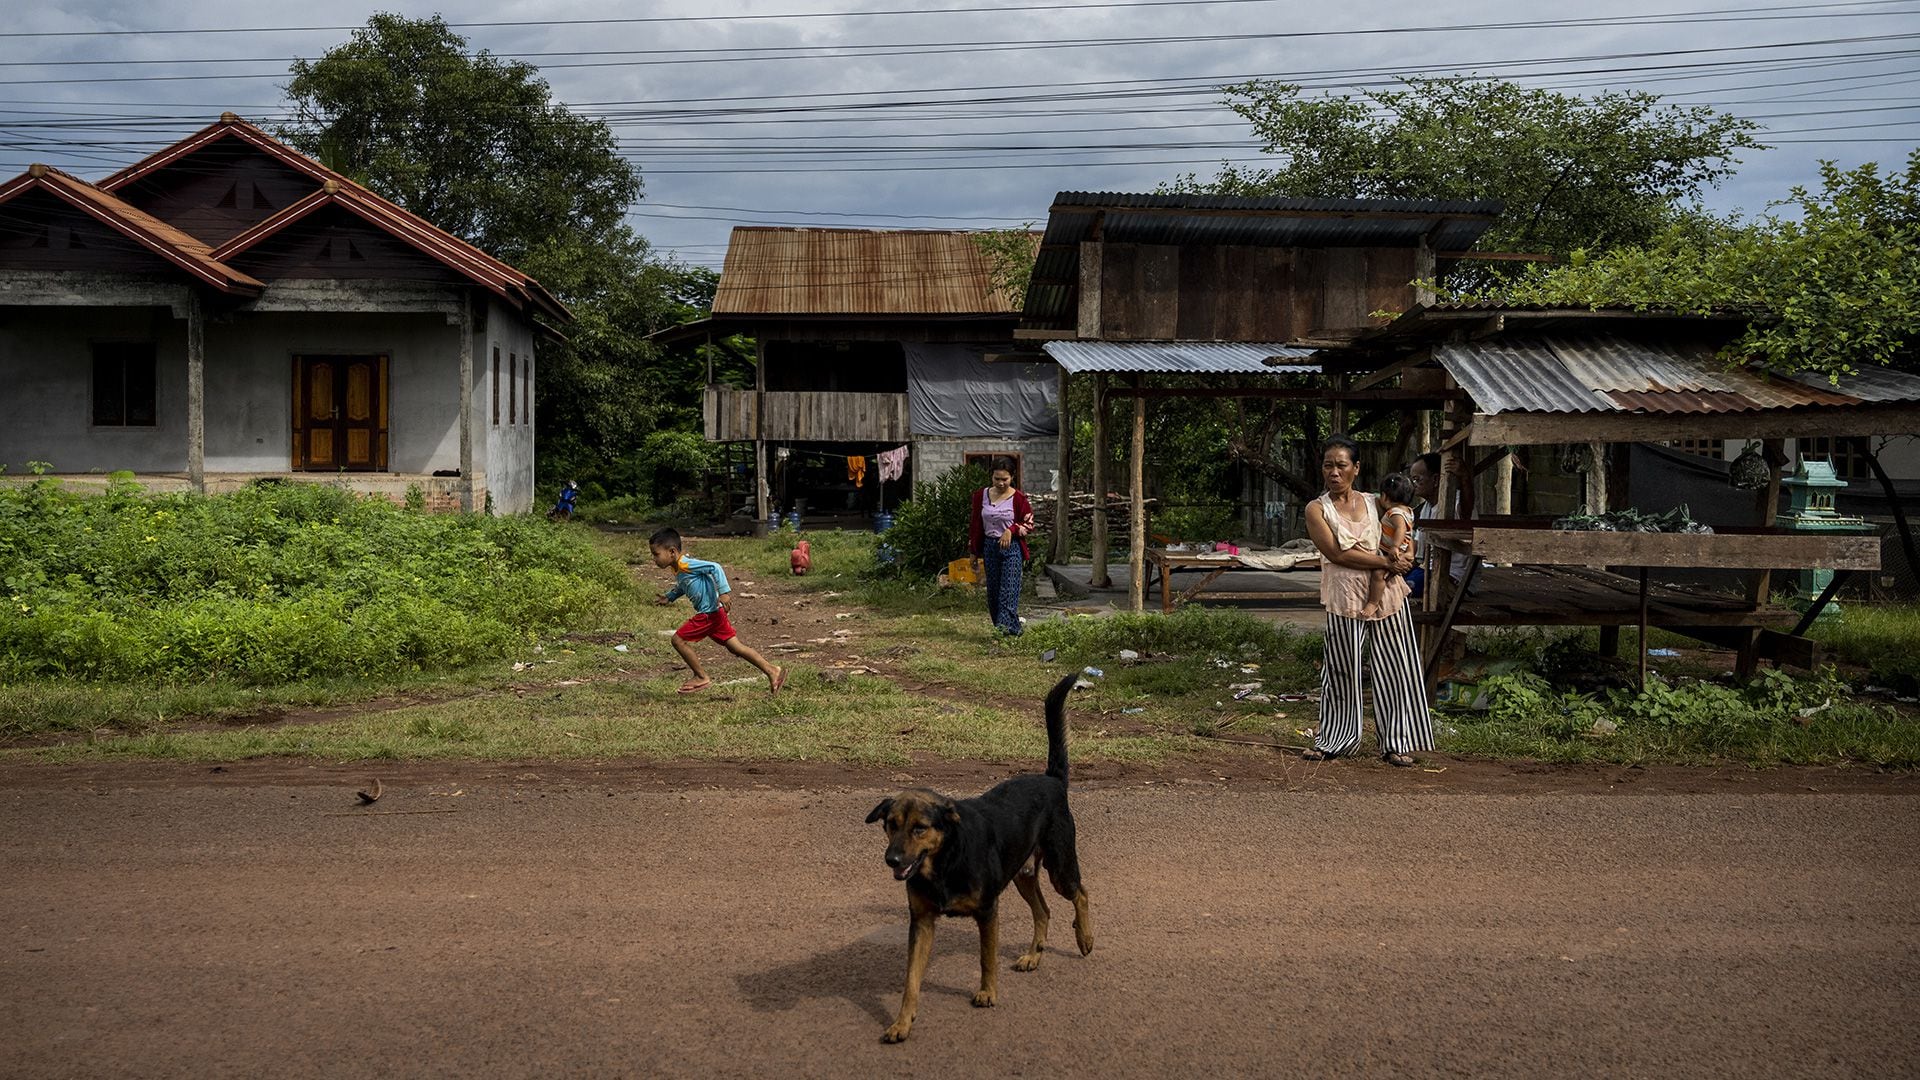 Personas y un perro son vistos en una pequeña aldea en la zona rural del sur de Laos el 19 de agosto de 2022 en Laos (Getty Images)